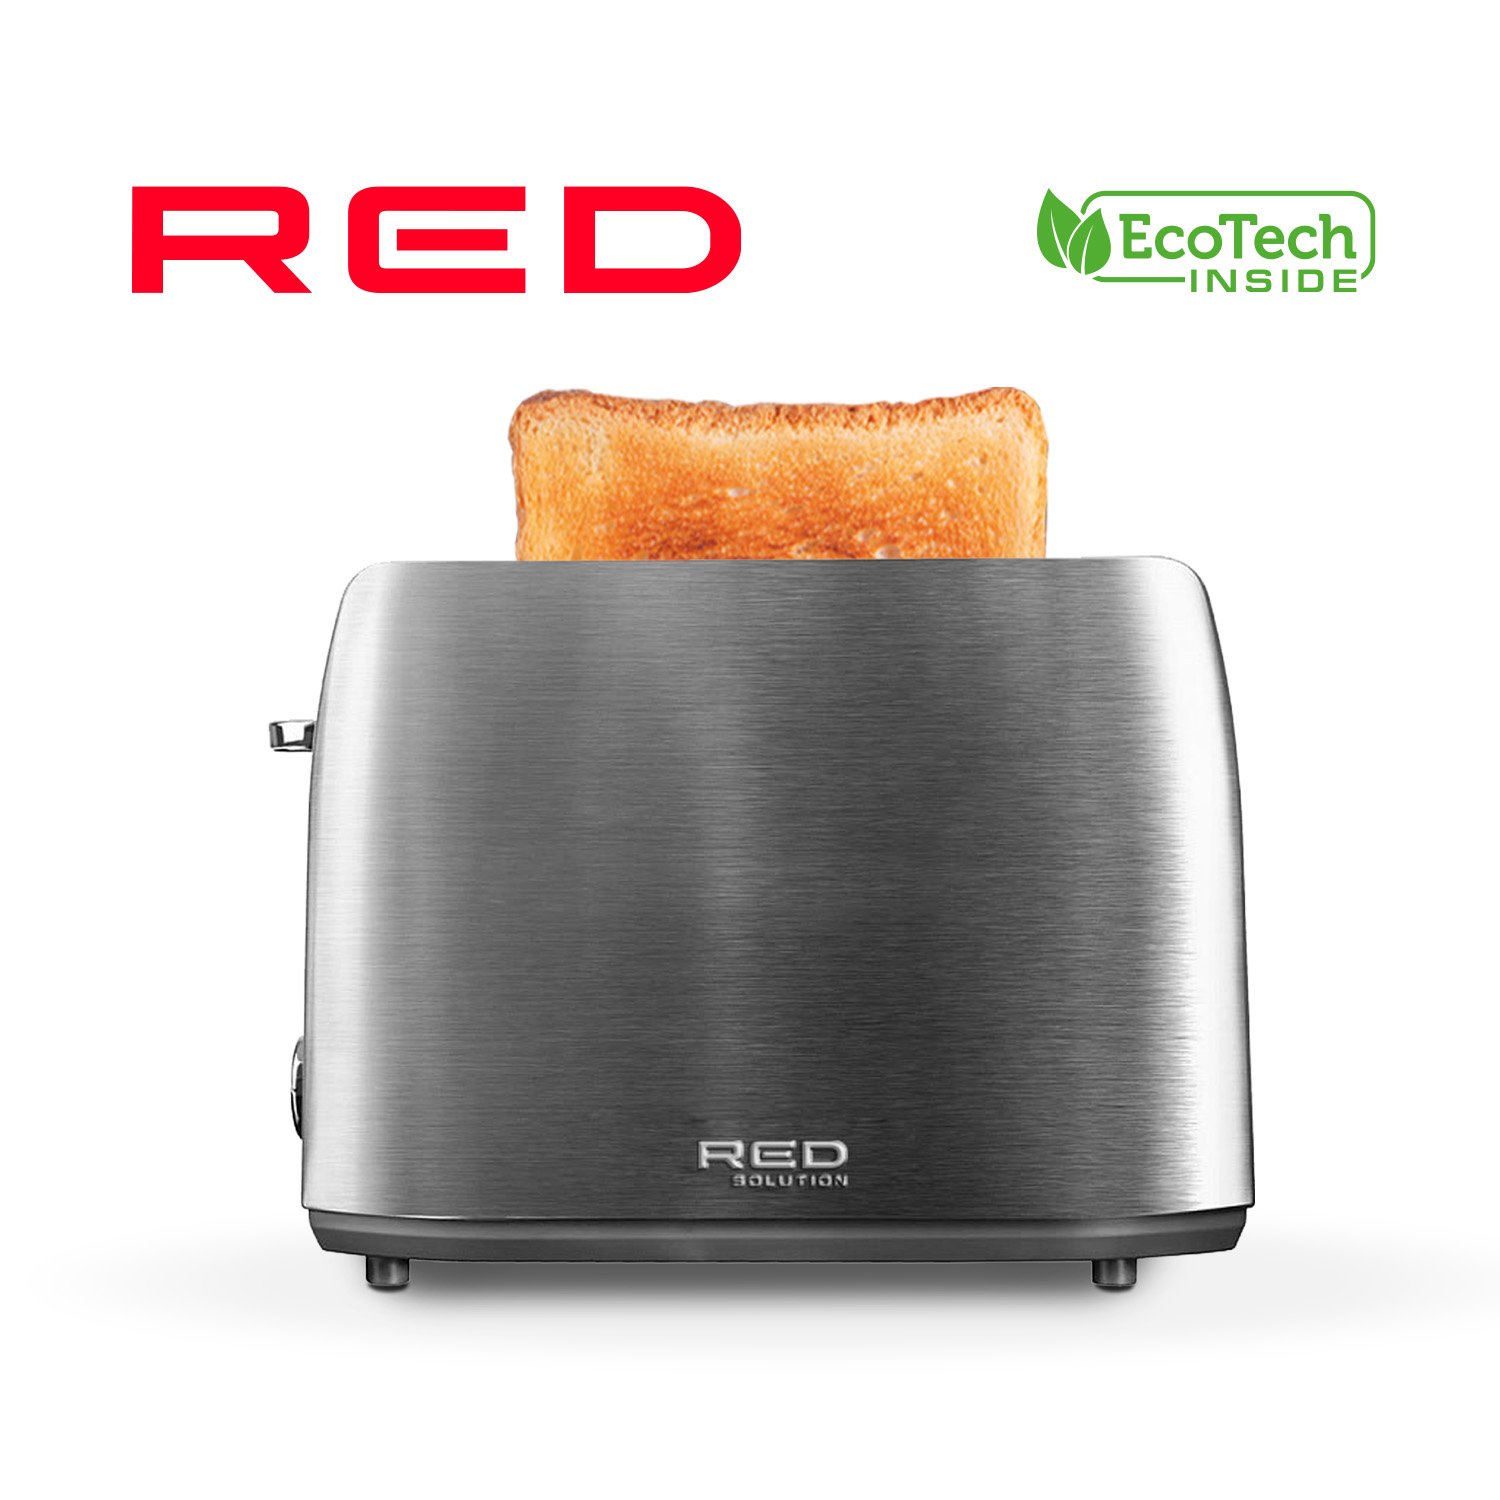 Тостер RED SOLUTION RT-M409 серебристый, серый тостер red solution rt m403 серебристый серый